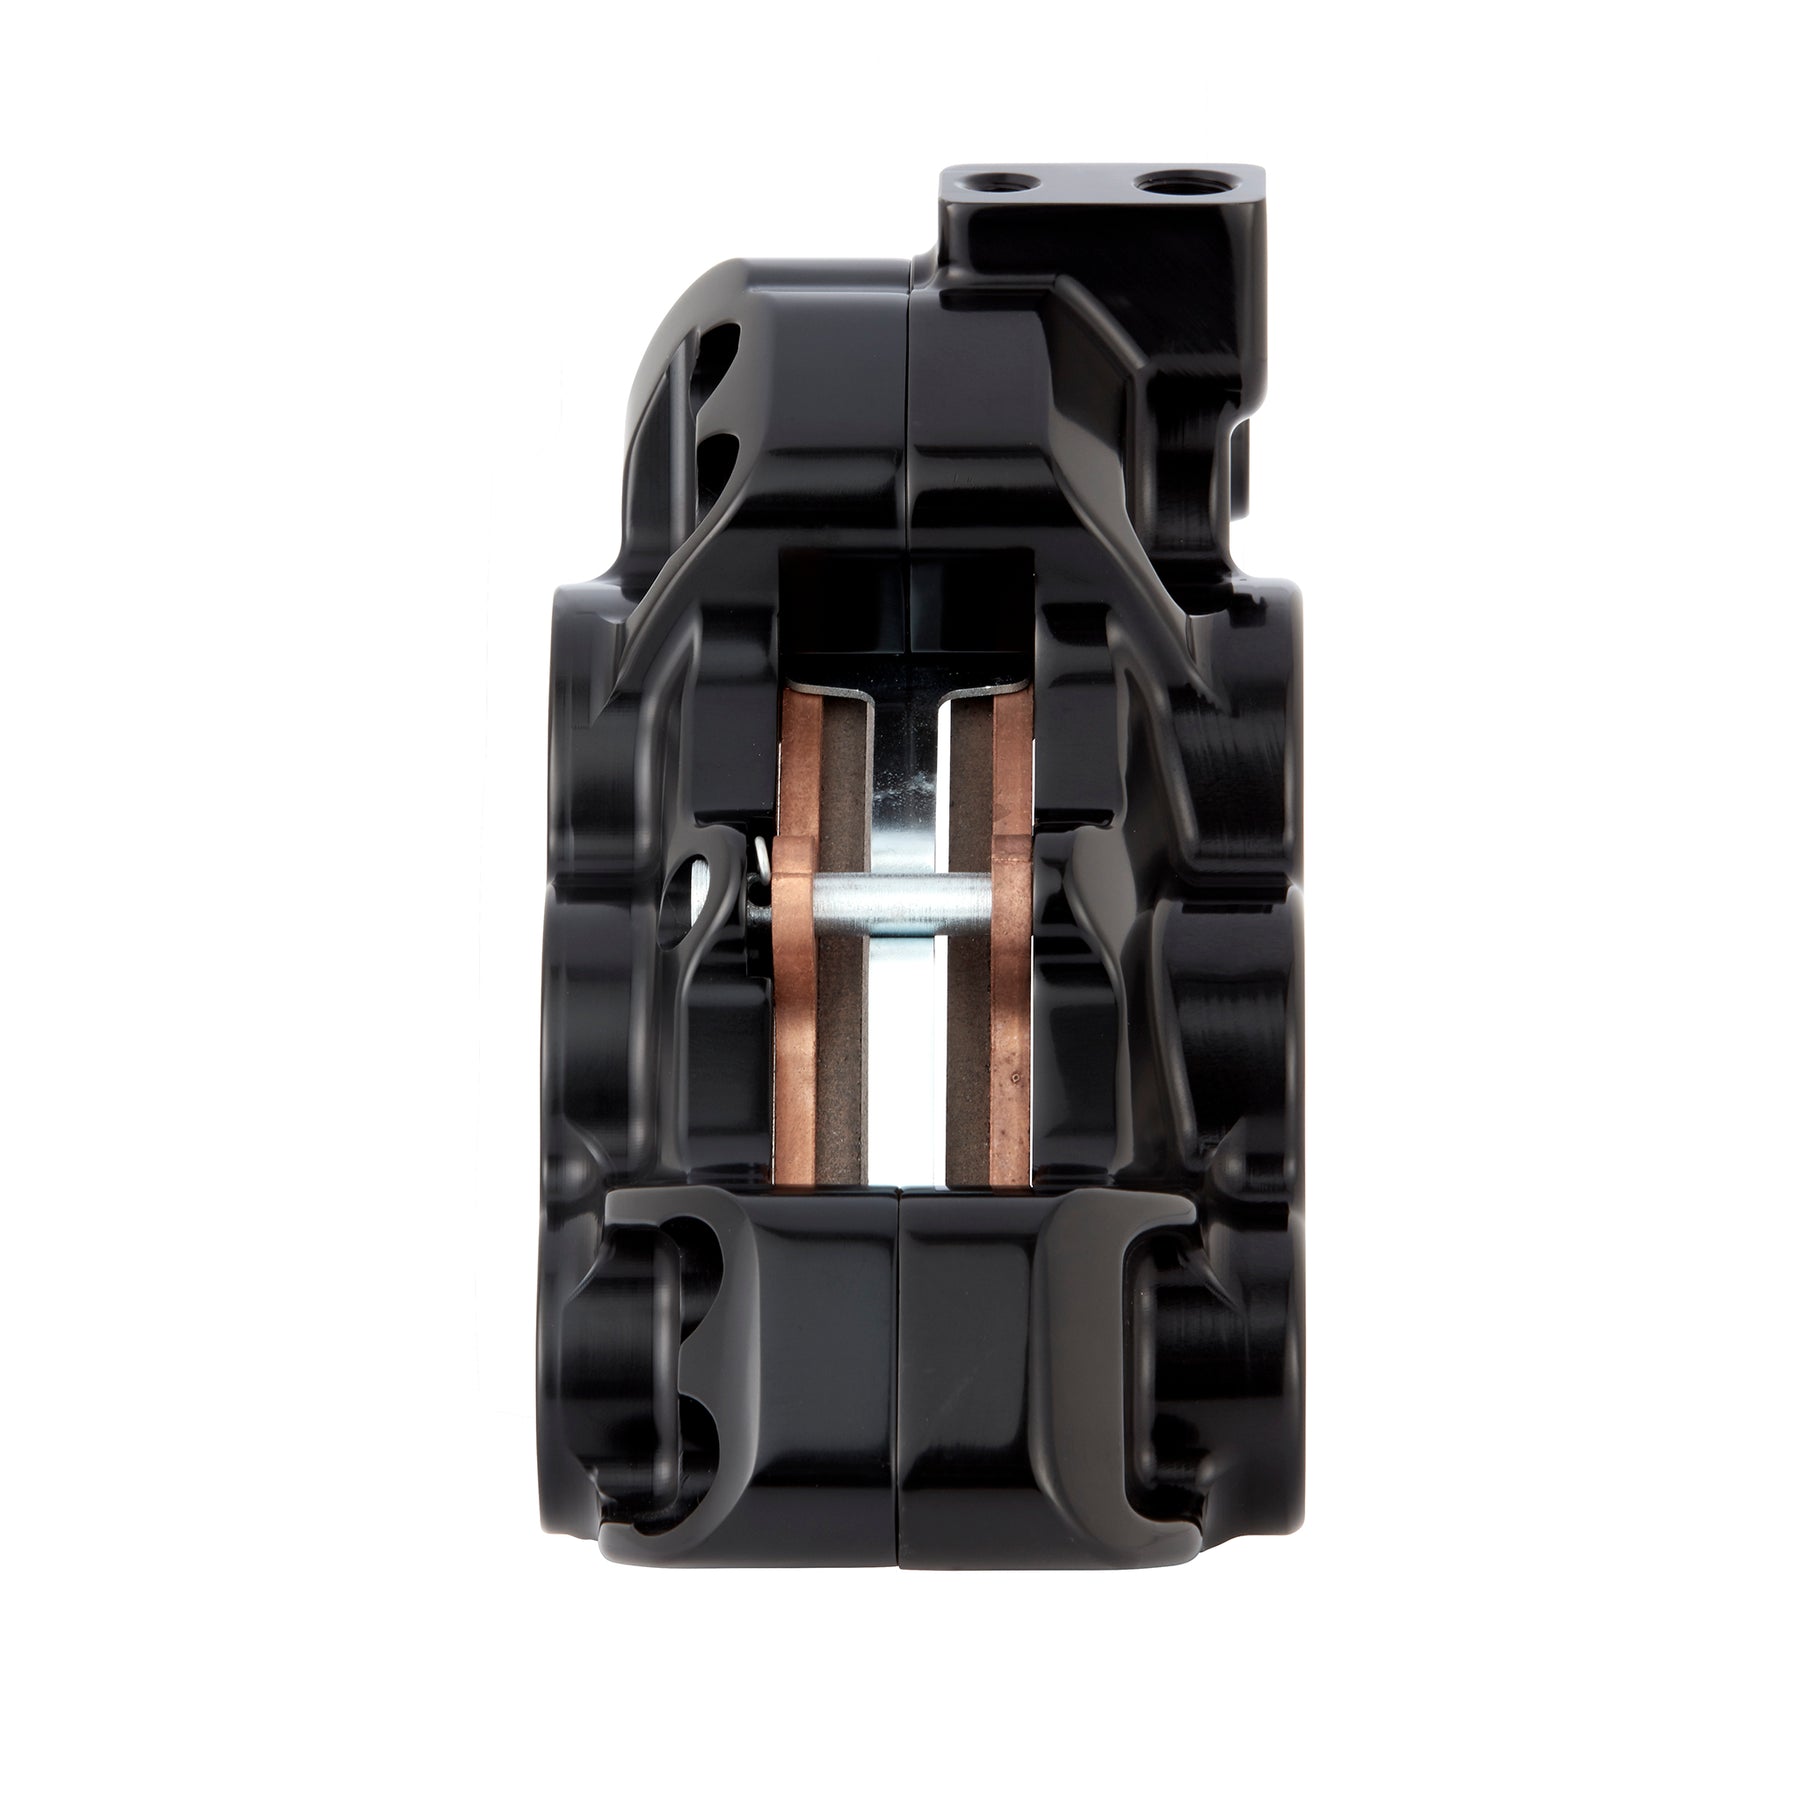 6-Piston Differential Bore Brake Calipers - 11.8"